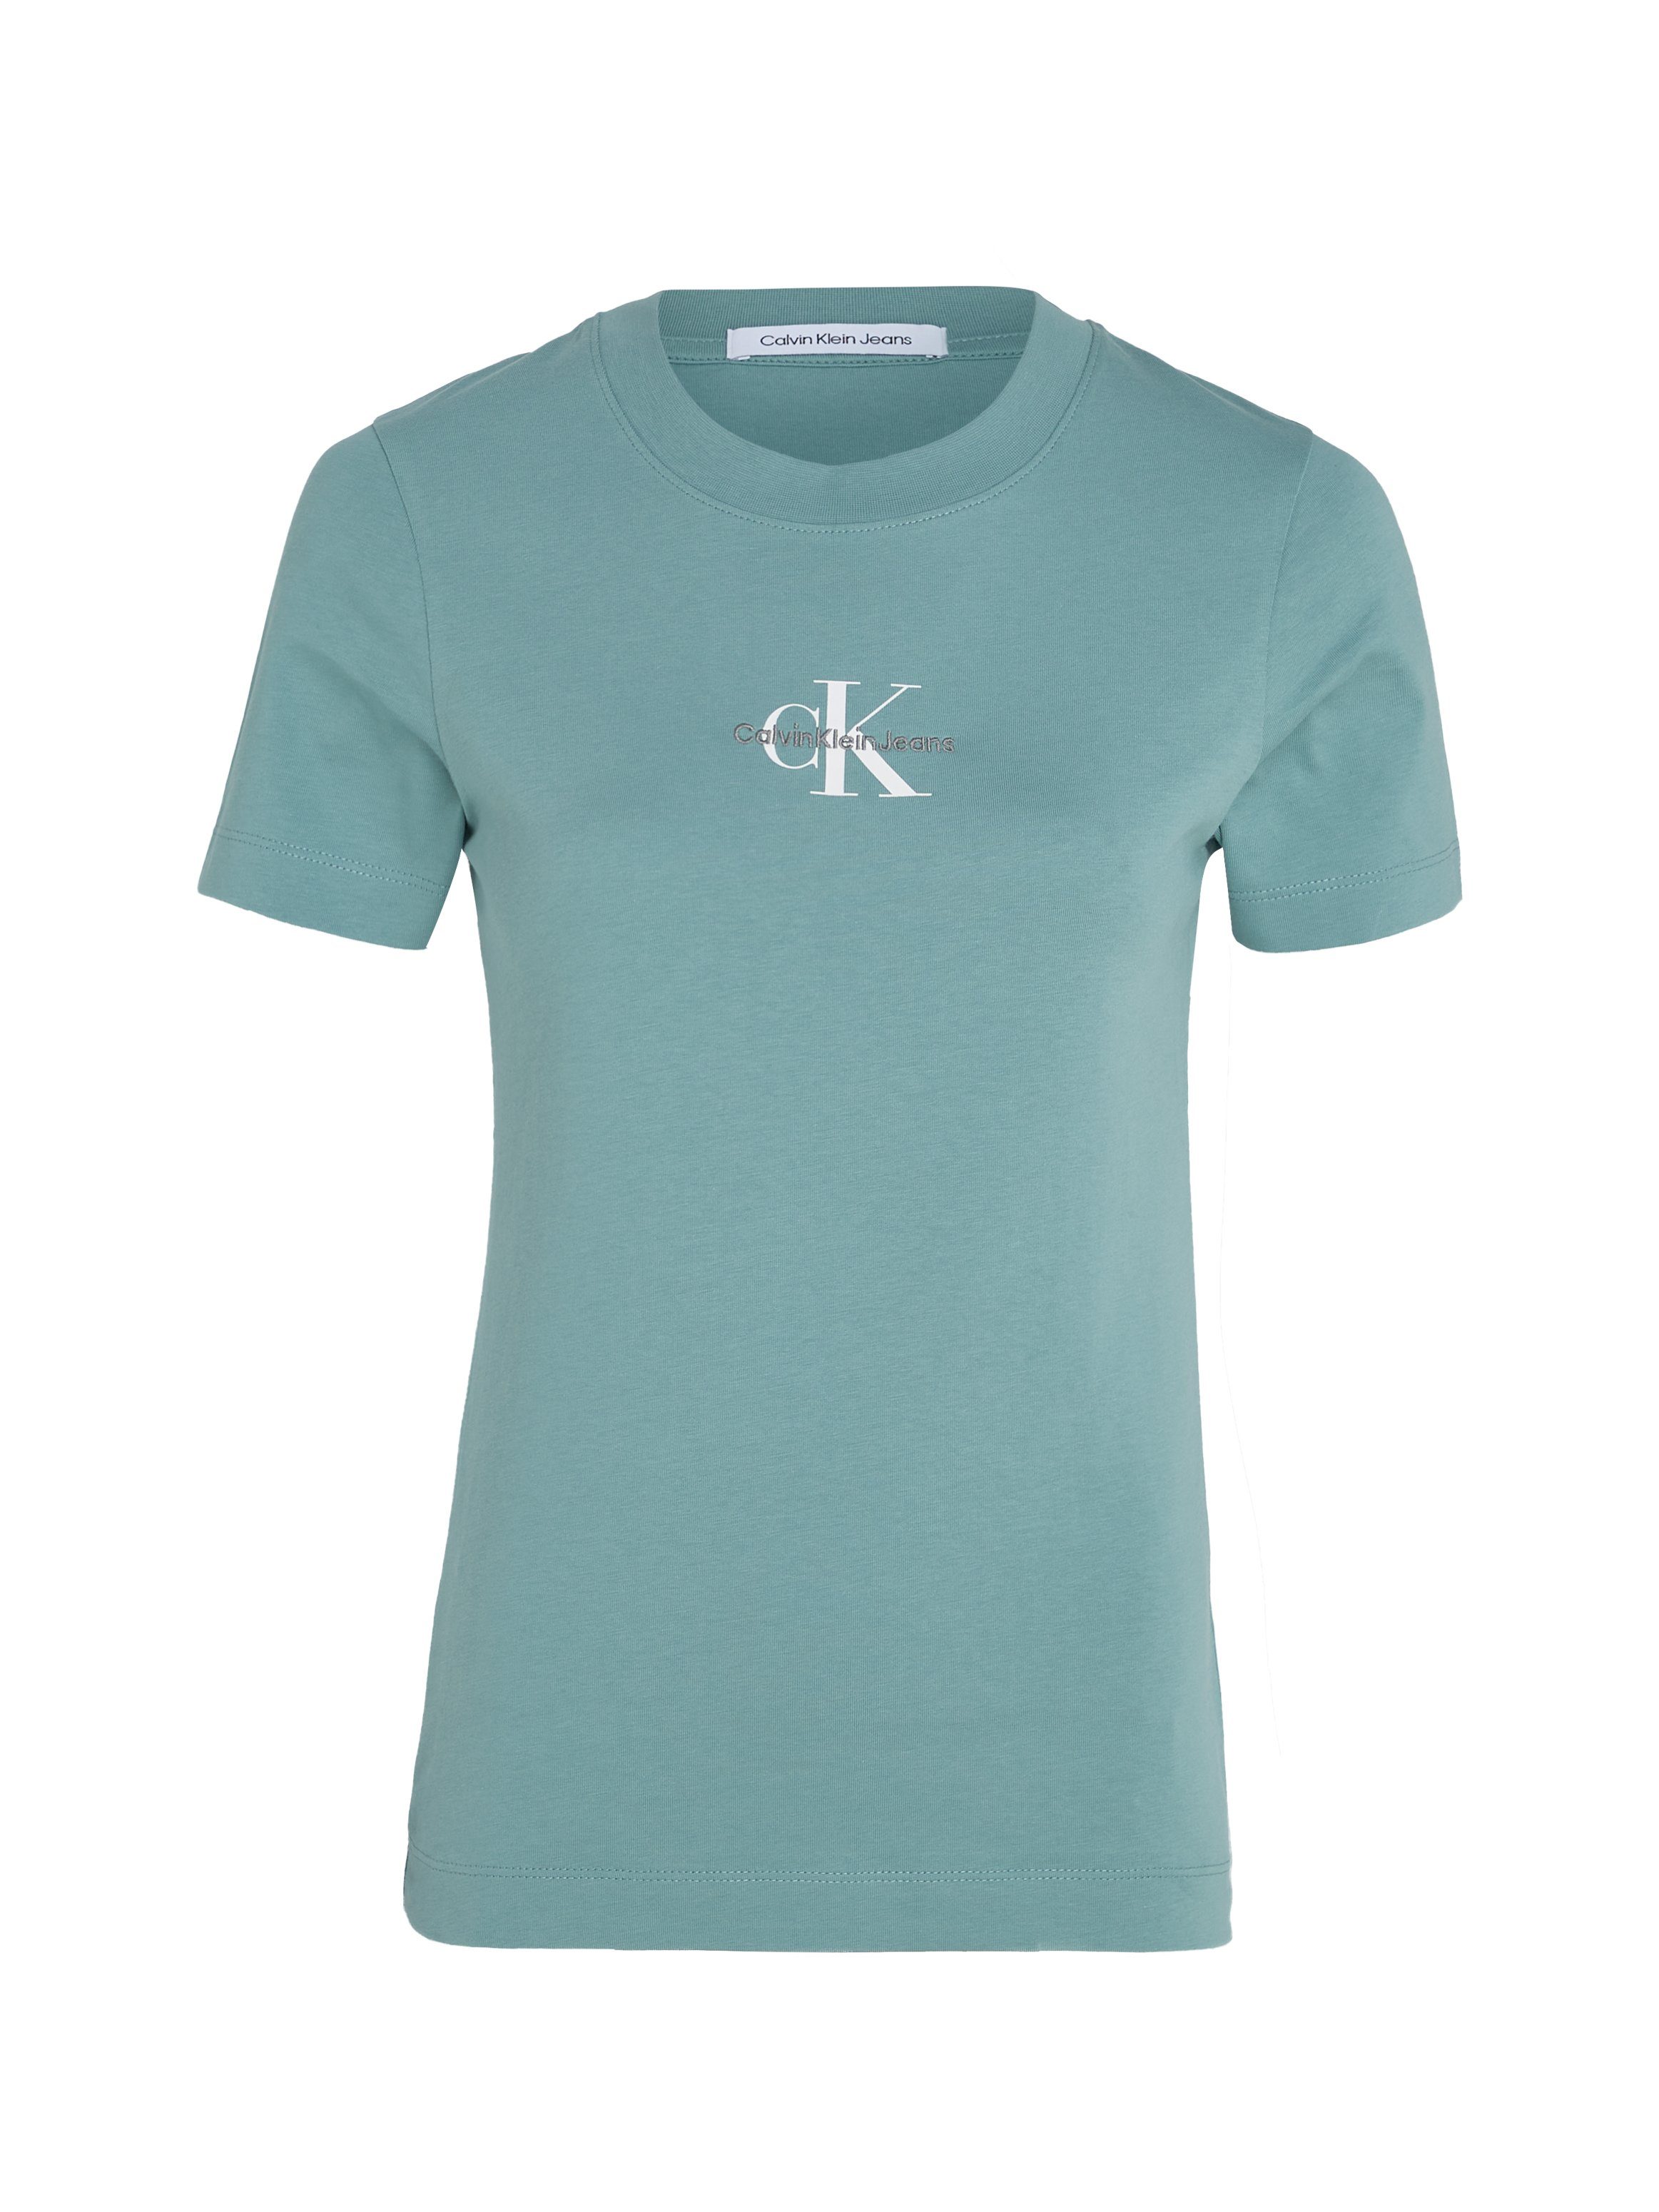 Calvin Klein Jeans T-Shirt MONOLOGO blau TEE SLIM mit FIT Logodruck